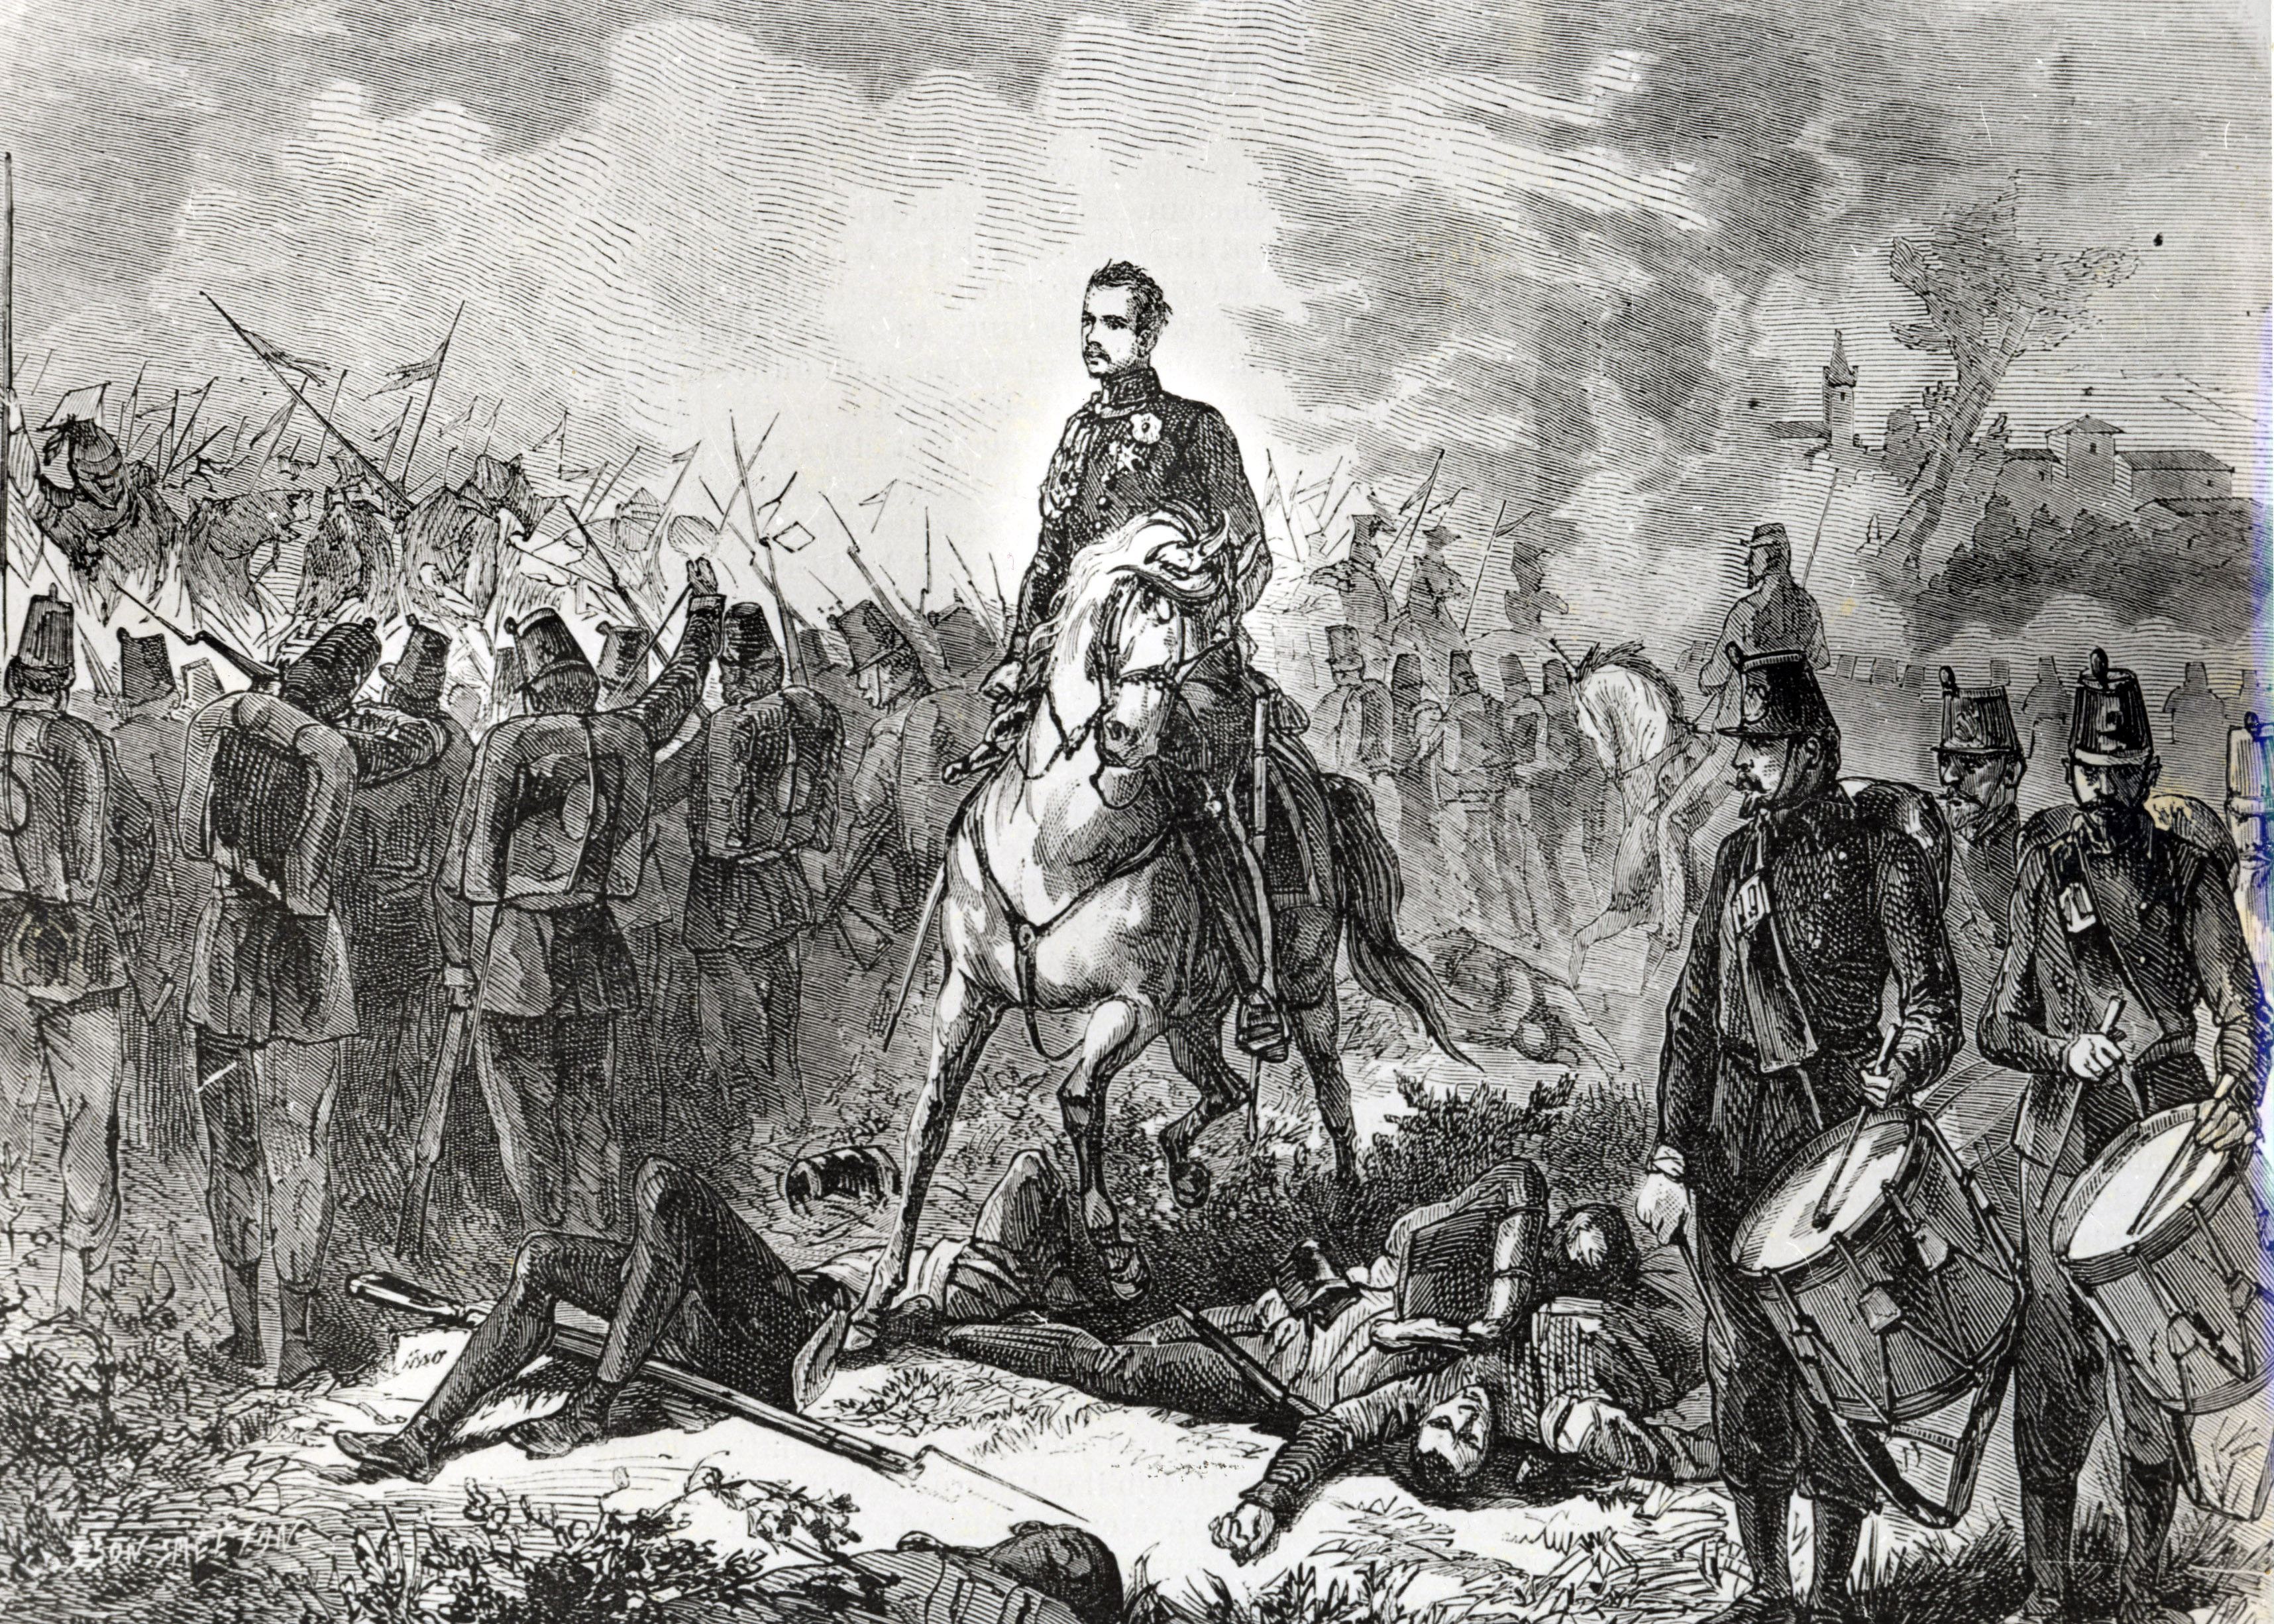 La battaglia di Custoza il 24 giugno 1866, durante la III Guerra d’indipendenza, sconfitta dell’esercito italiano dovuta soprattutto a problemi organizzativi e funzionali dei più alti comandi militari